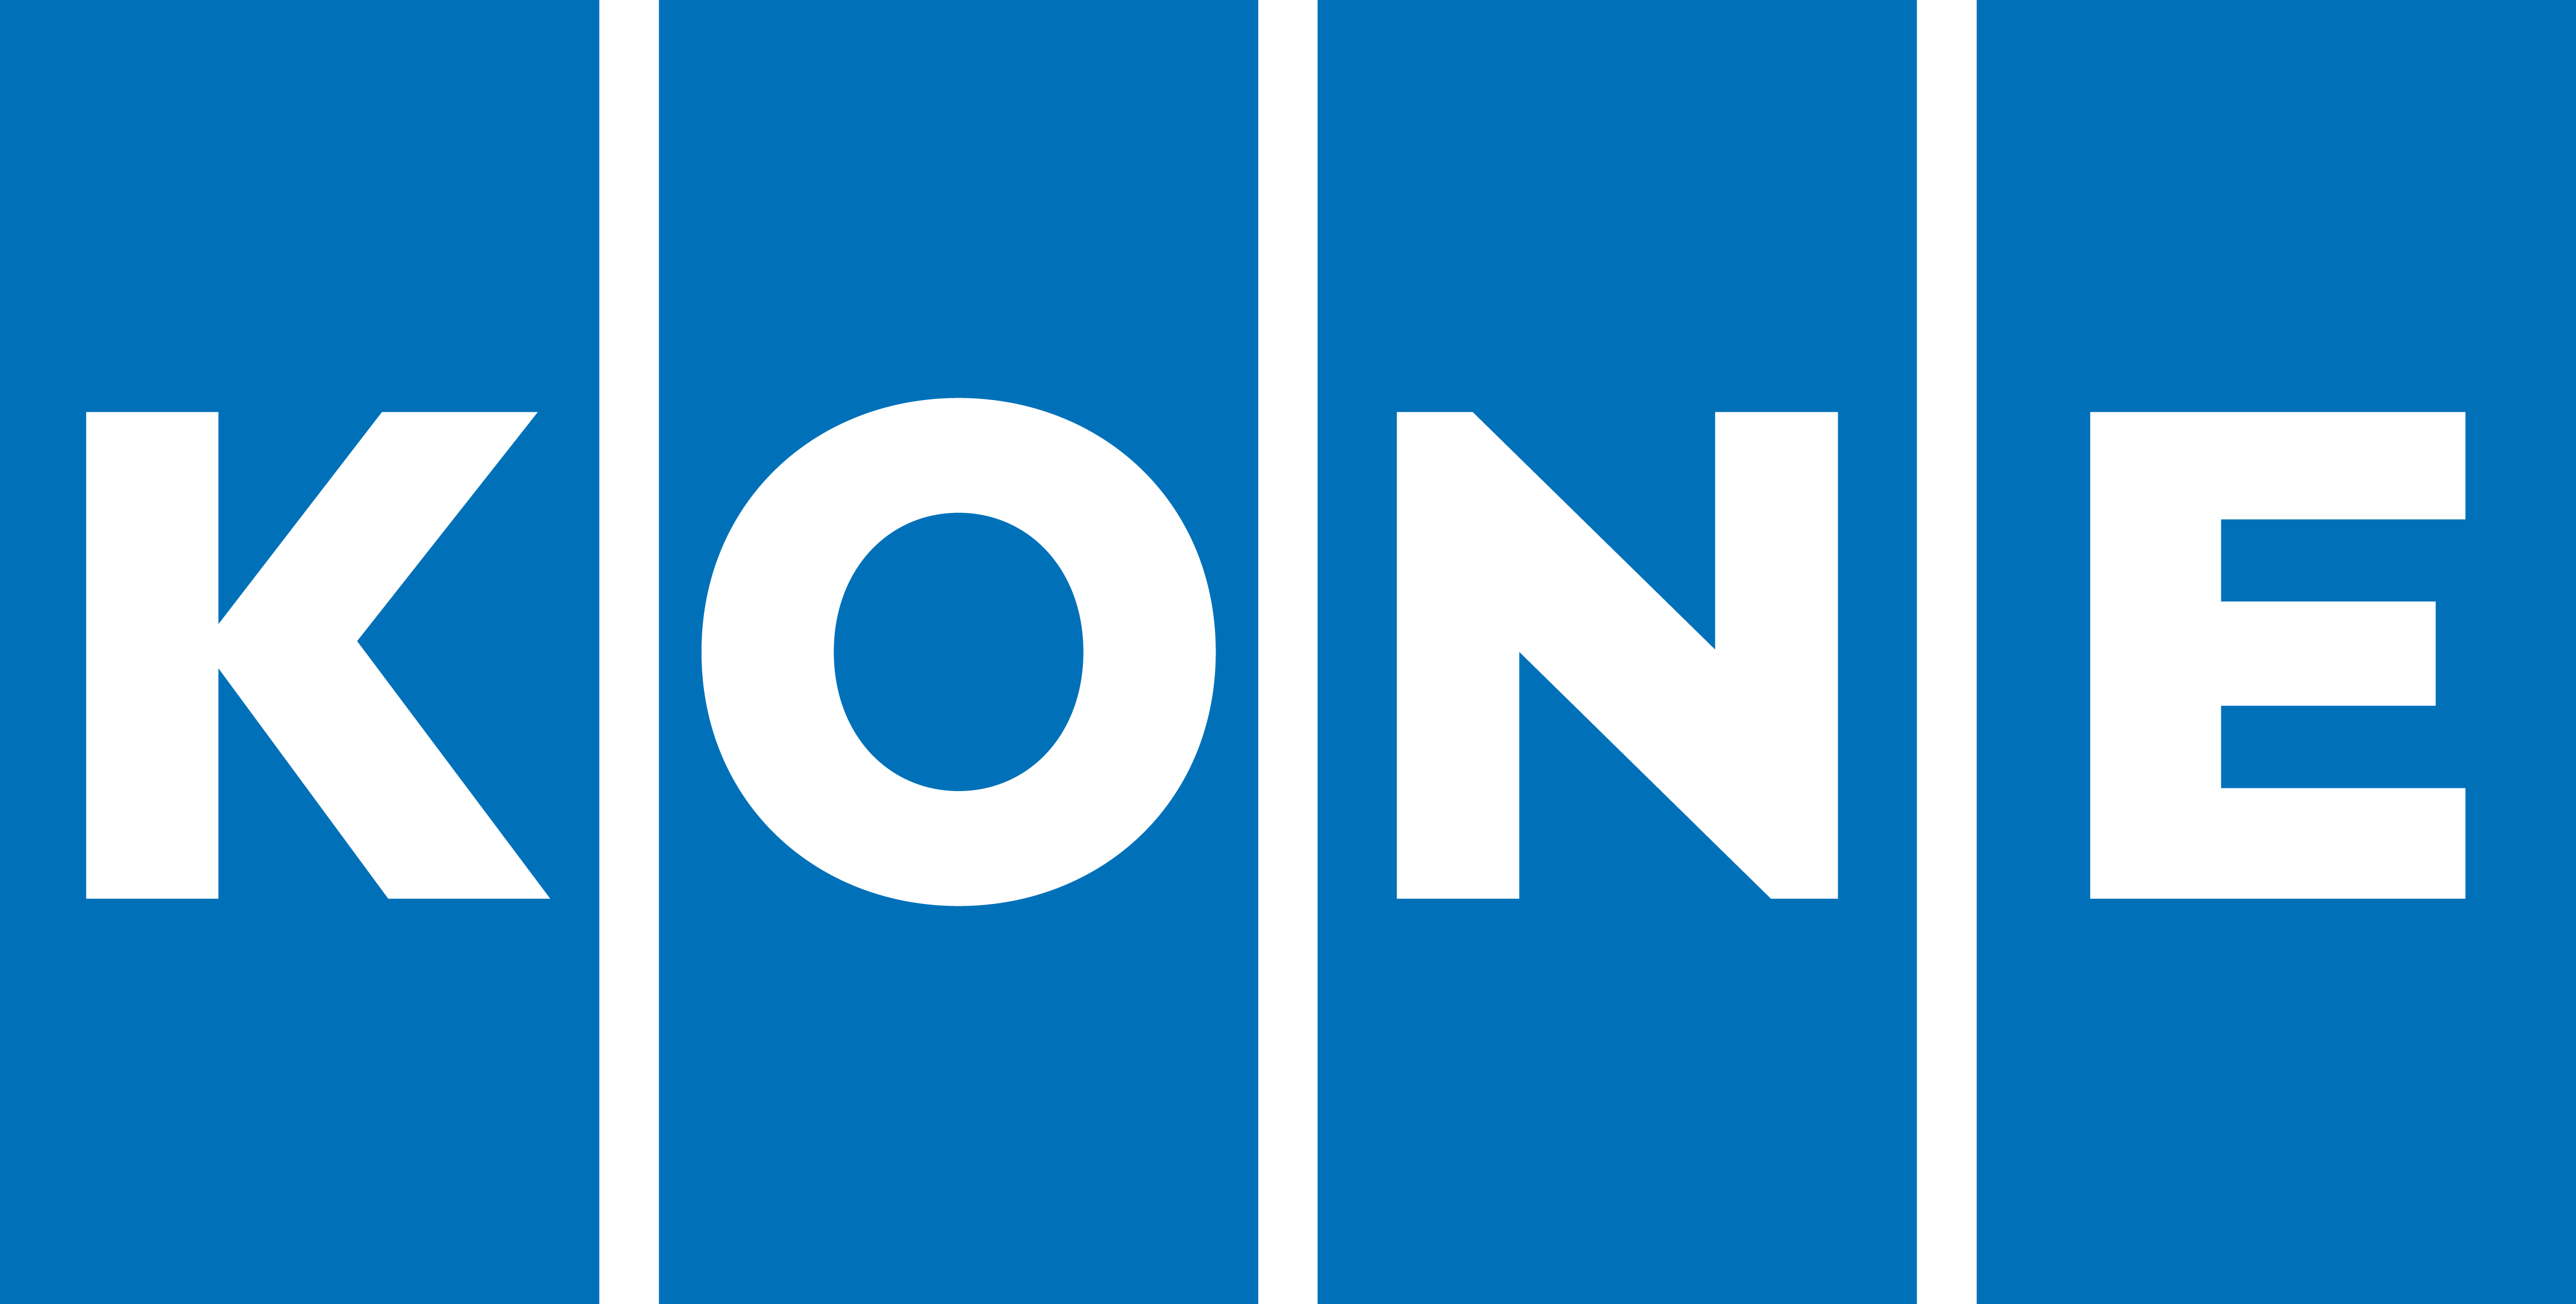 KONE logo